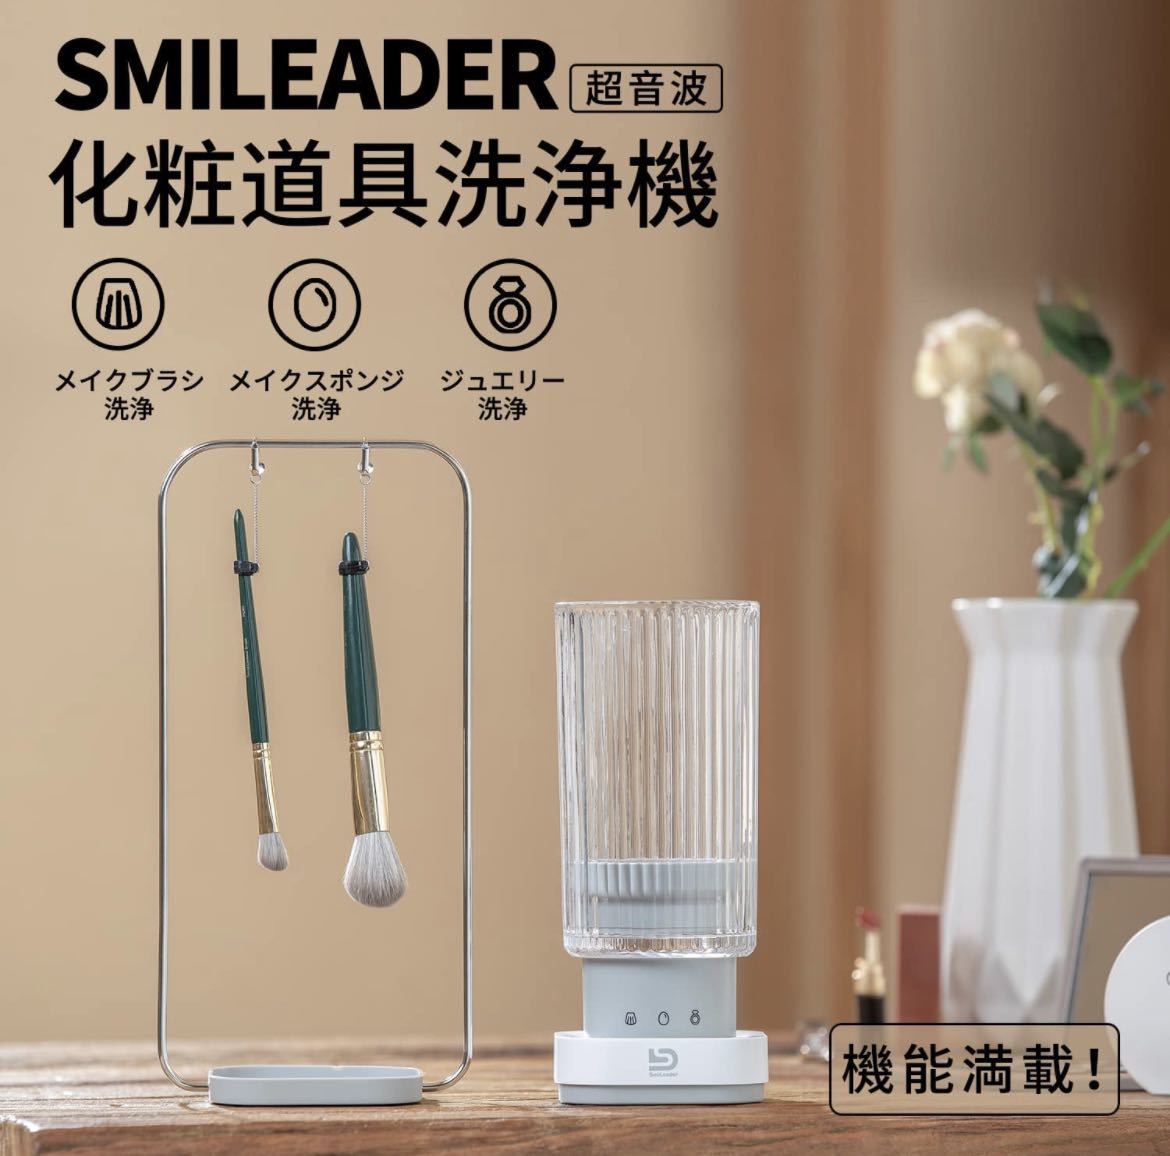 Smileader 超音波化粧道具洗浄機 ウルトラソニック_画像4